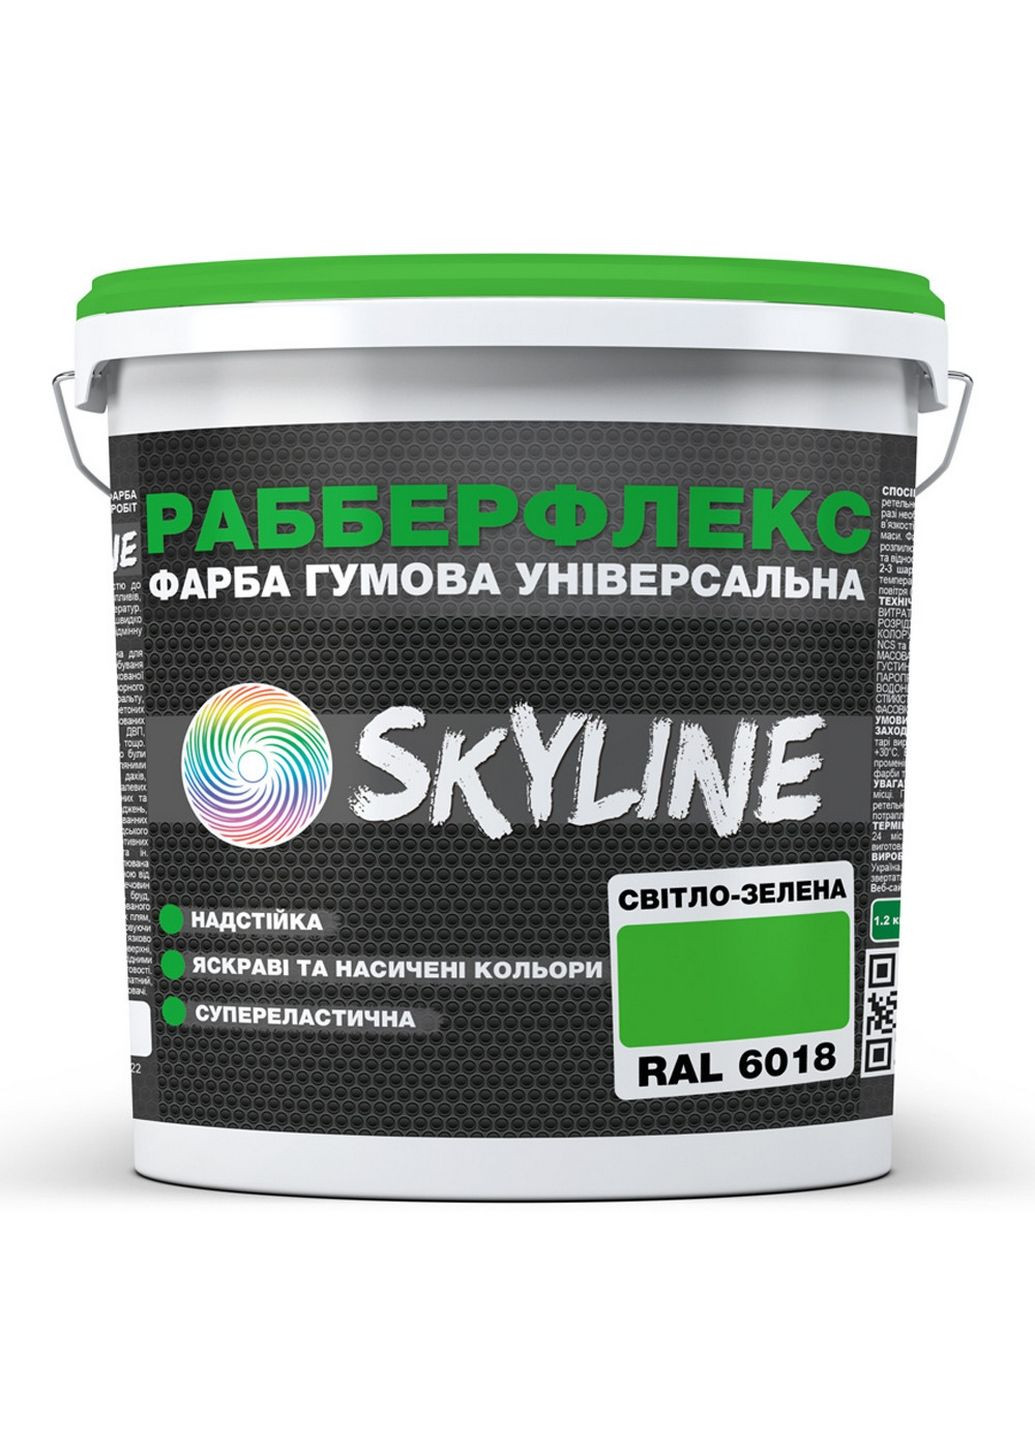 Краска резиновая суперэластичная сверхстойкая «РабберФлекс» 3,6 кг SkyLine (289363733)